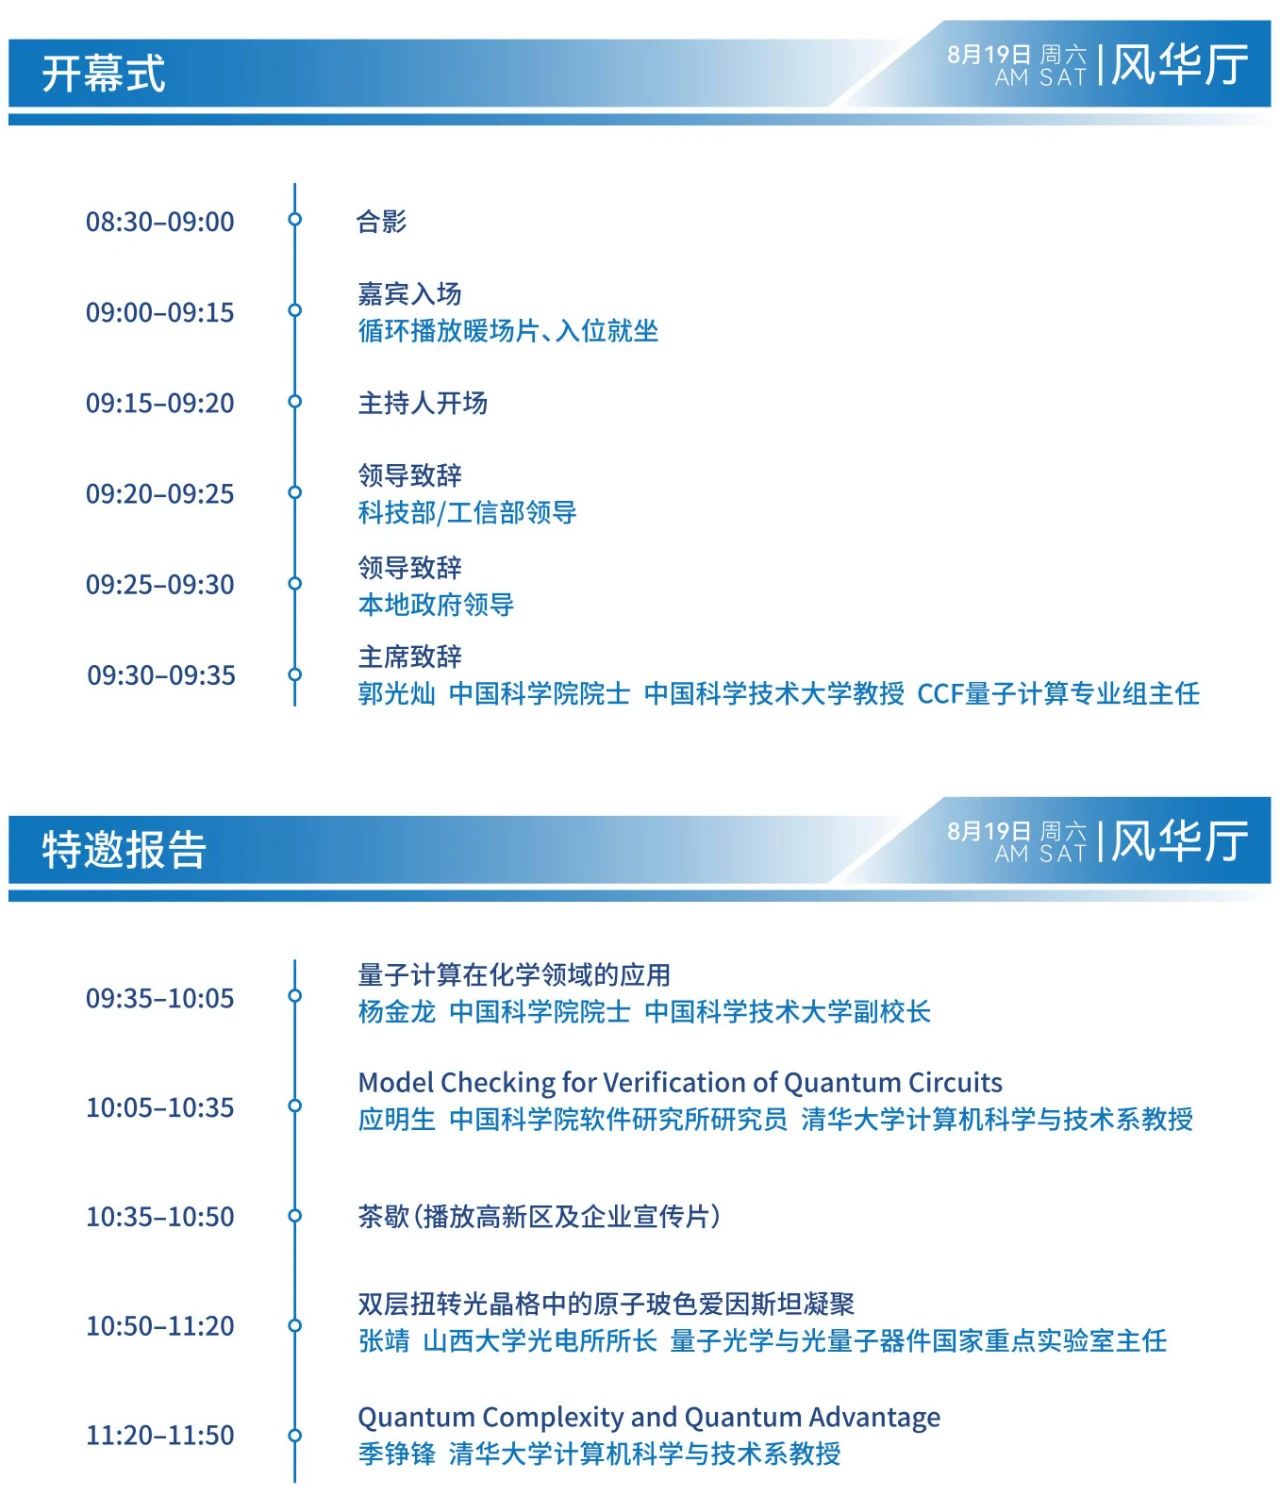 第二届CCF量子计算大会暨中国量子计算产业峰会(CQCC 2023)